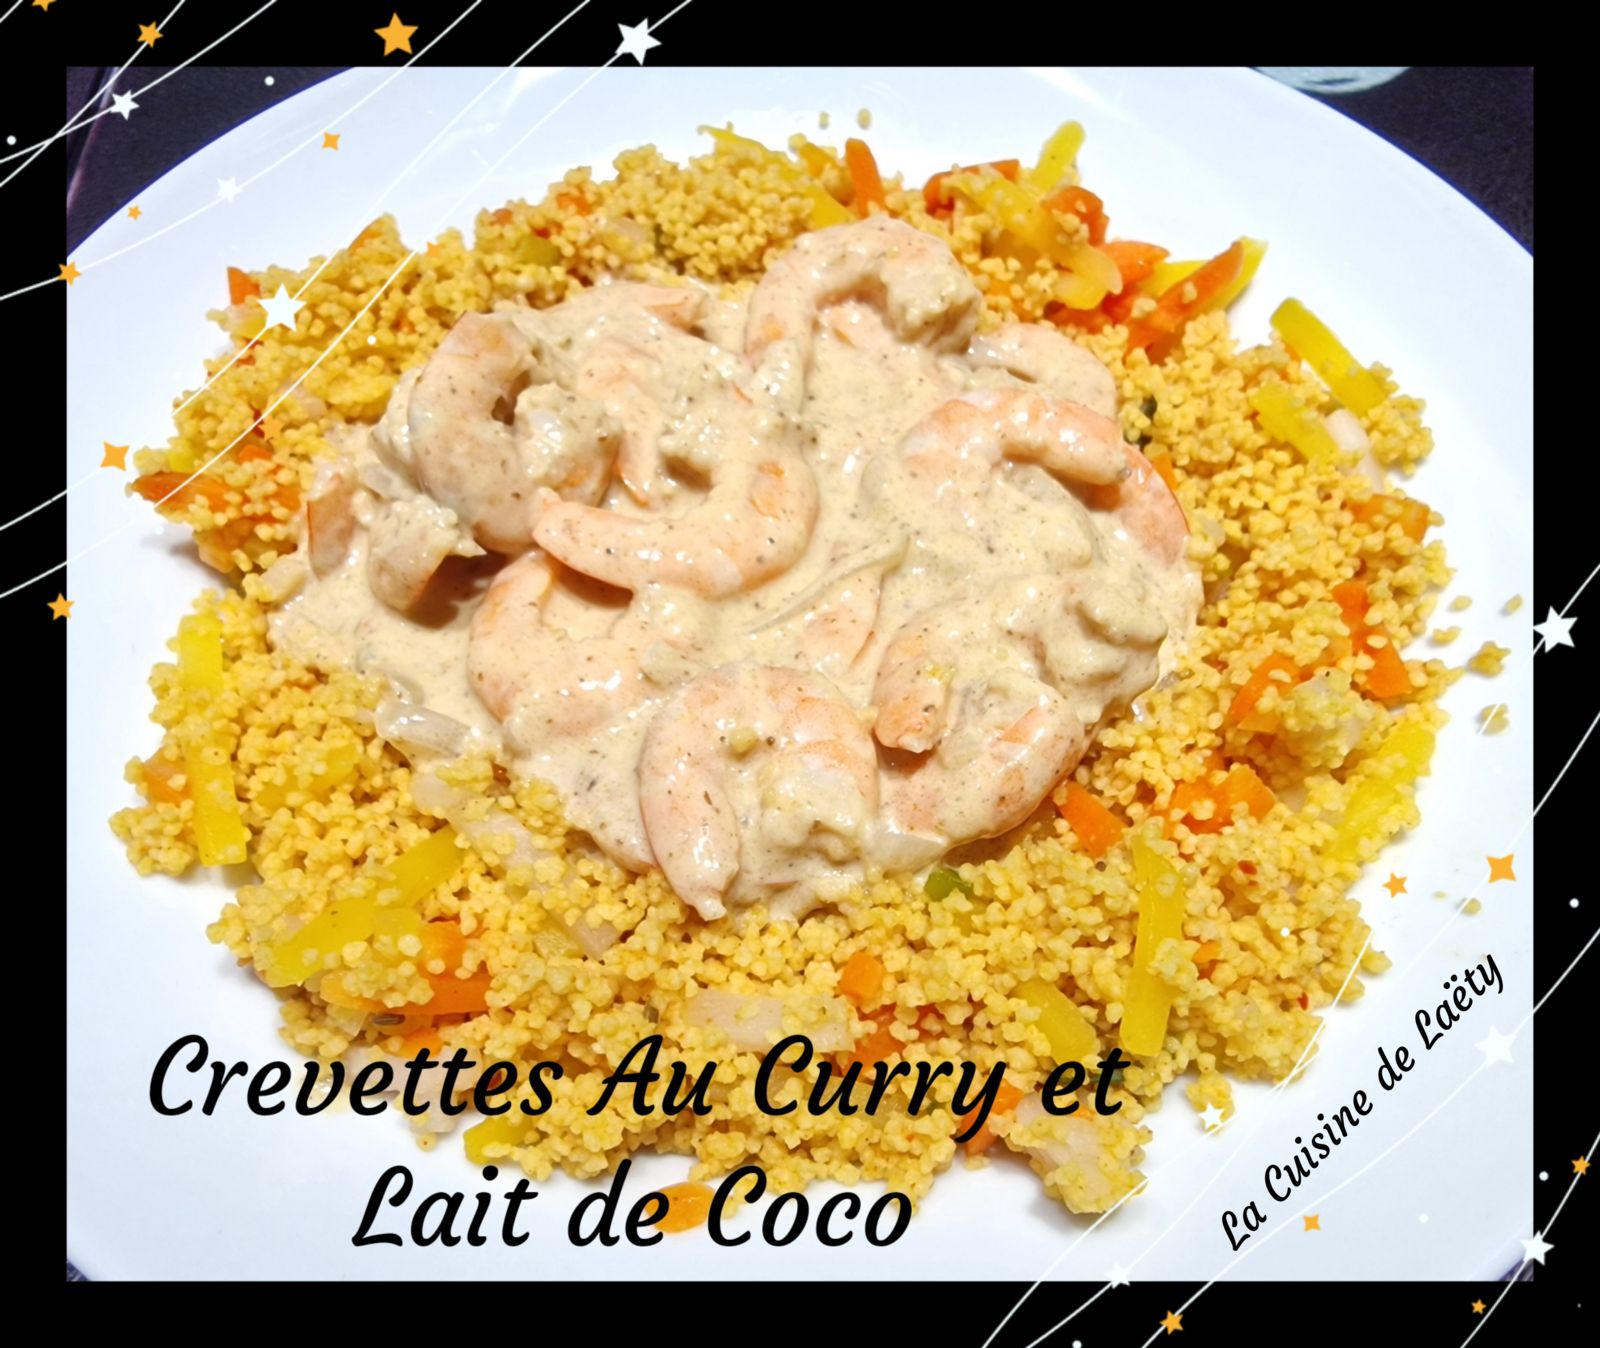 Crevettes au Curry et lait de Coco